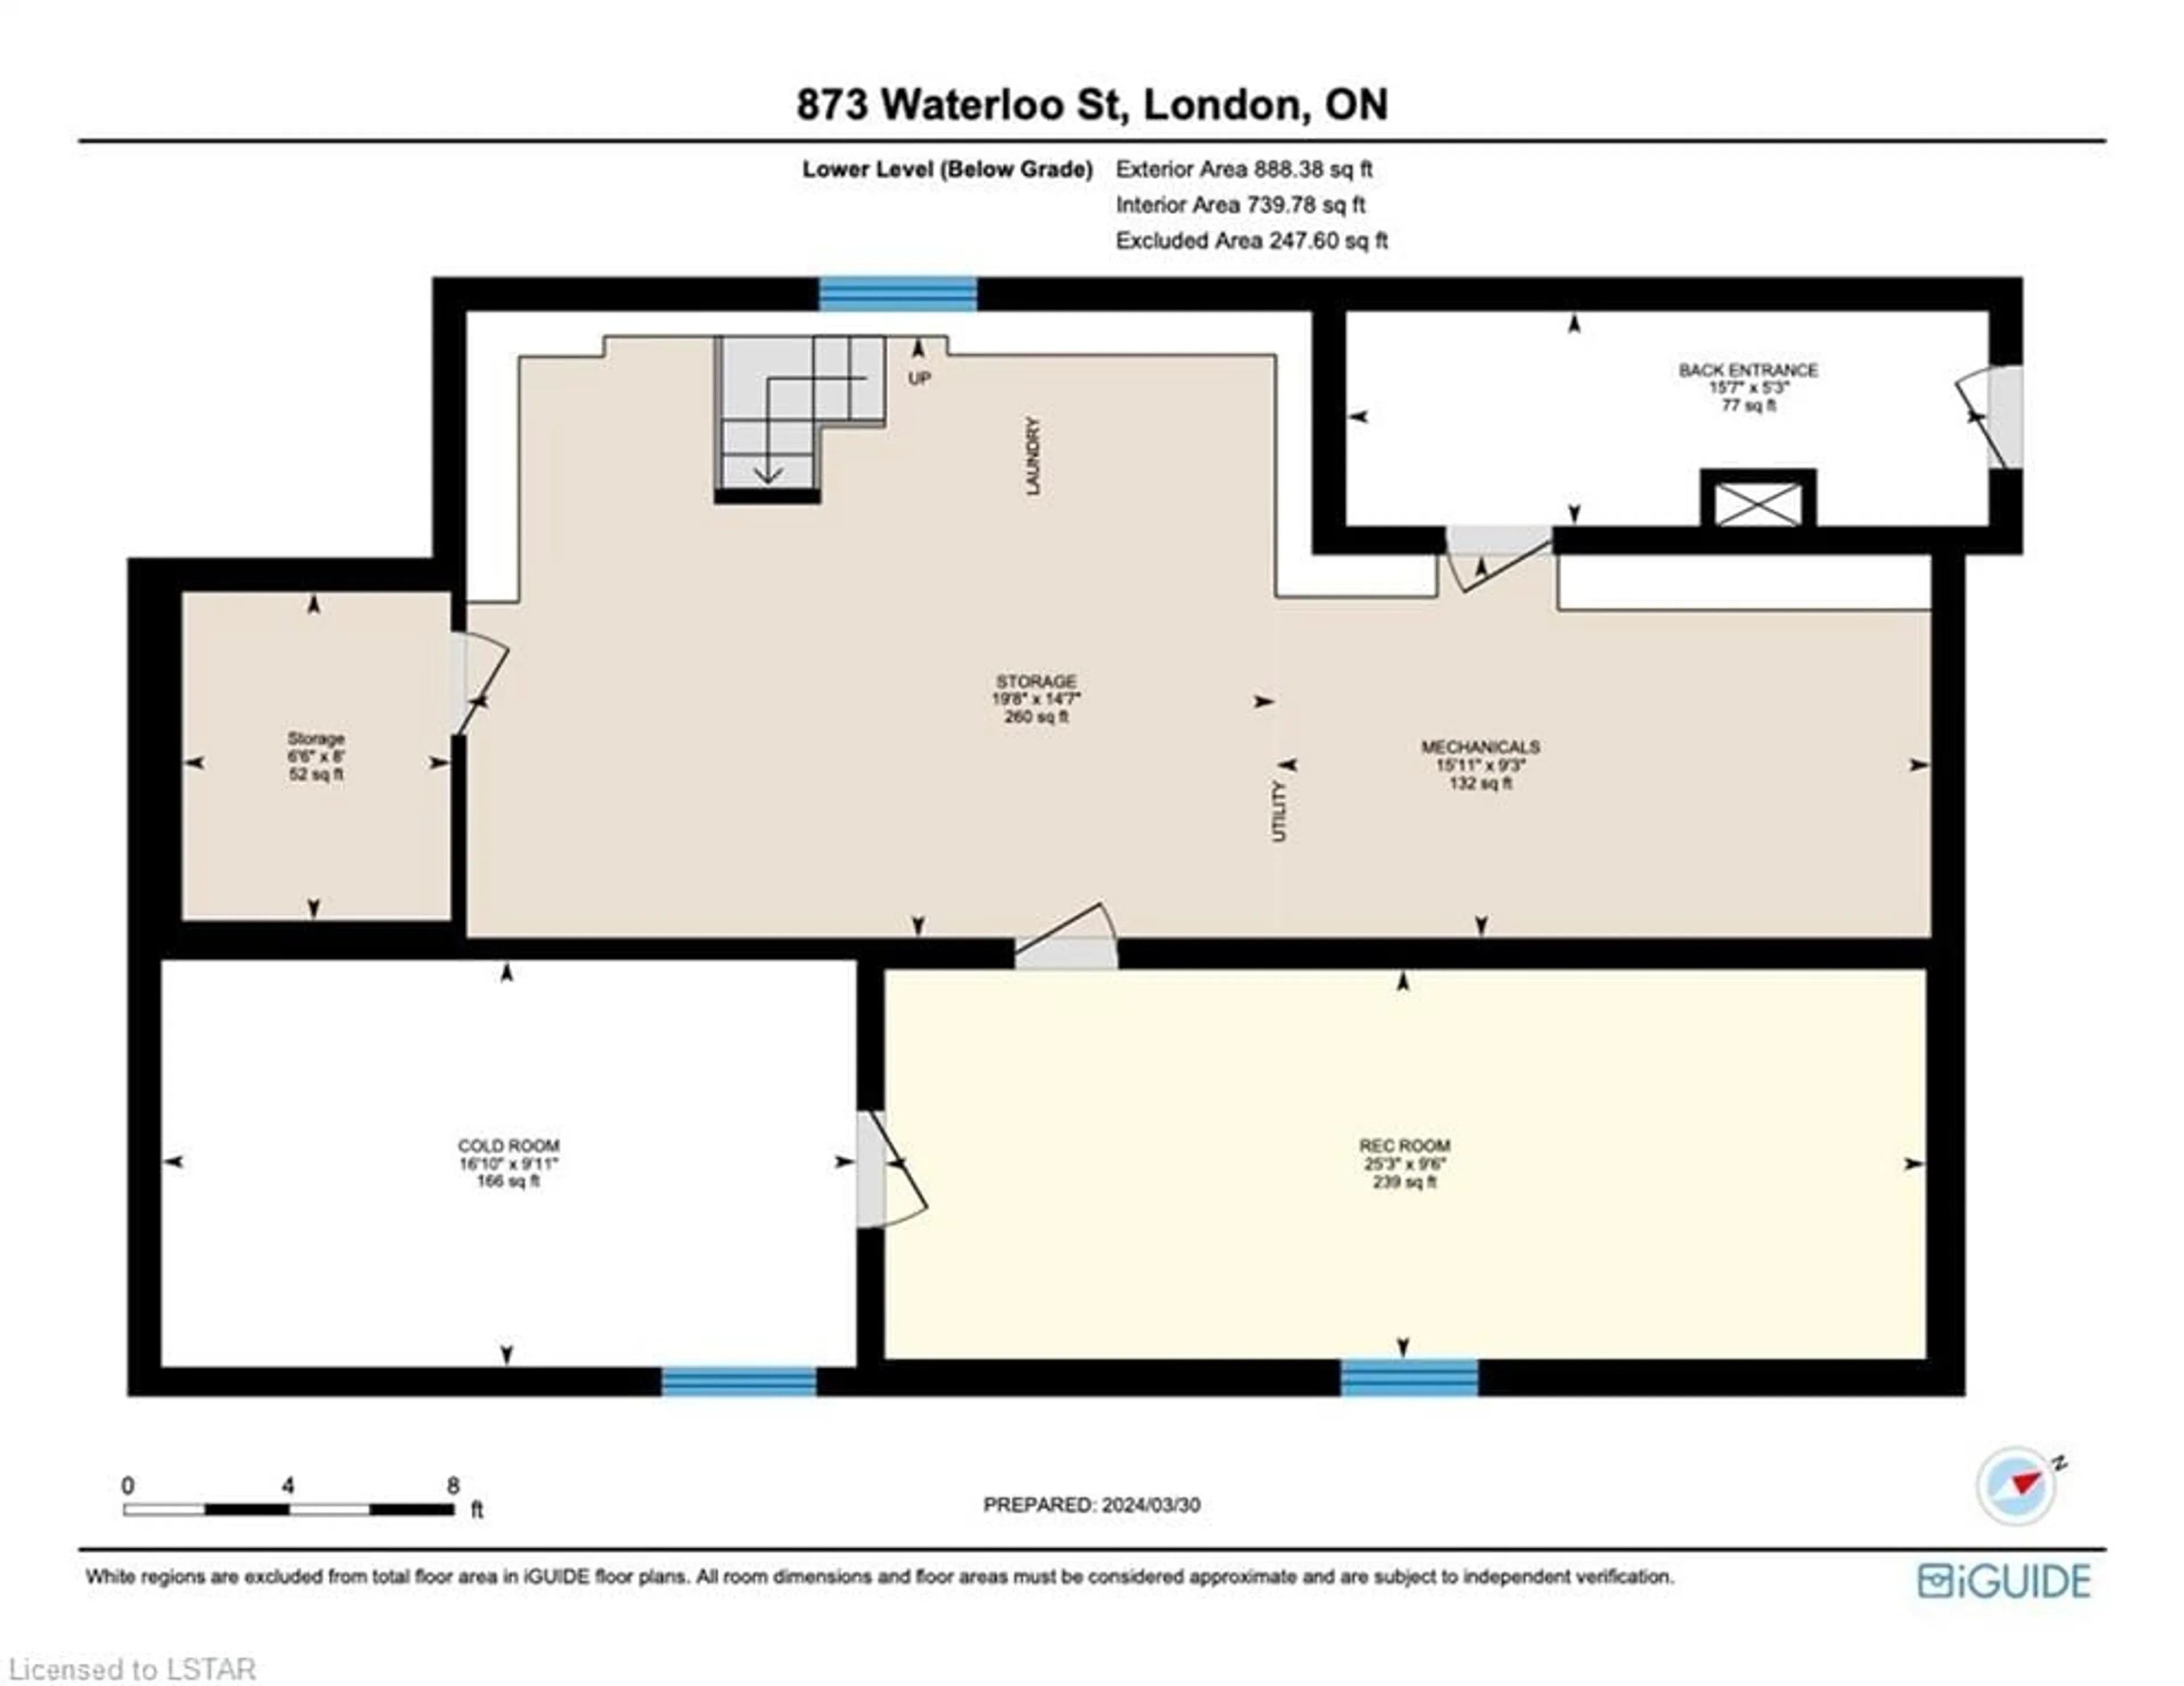 Floor plan for 873 Waterloo St, London Ontario N6A 3W7